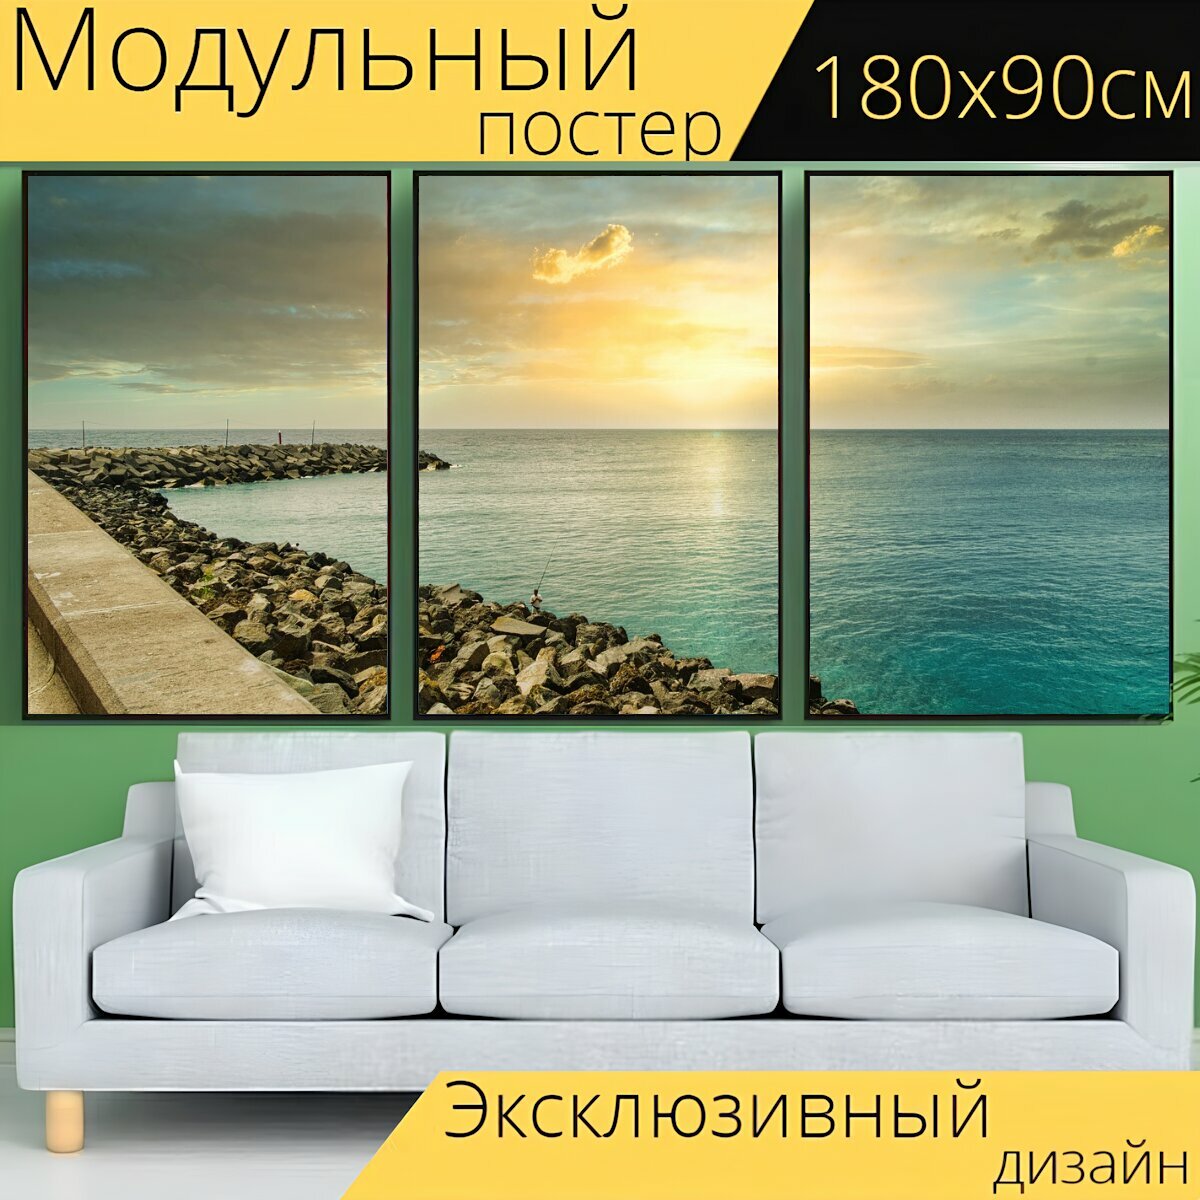 Модульный постер "Морской берег, валуны, море" 180 x 90 см. для интерьера